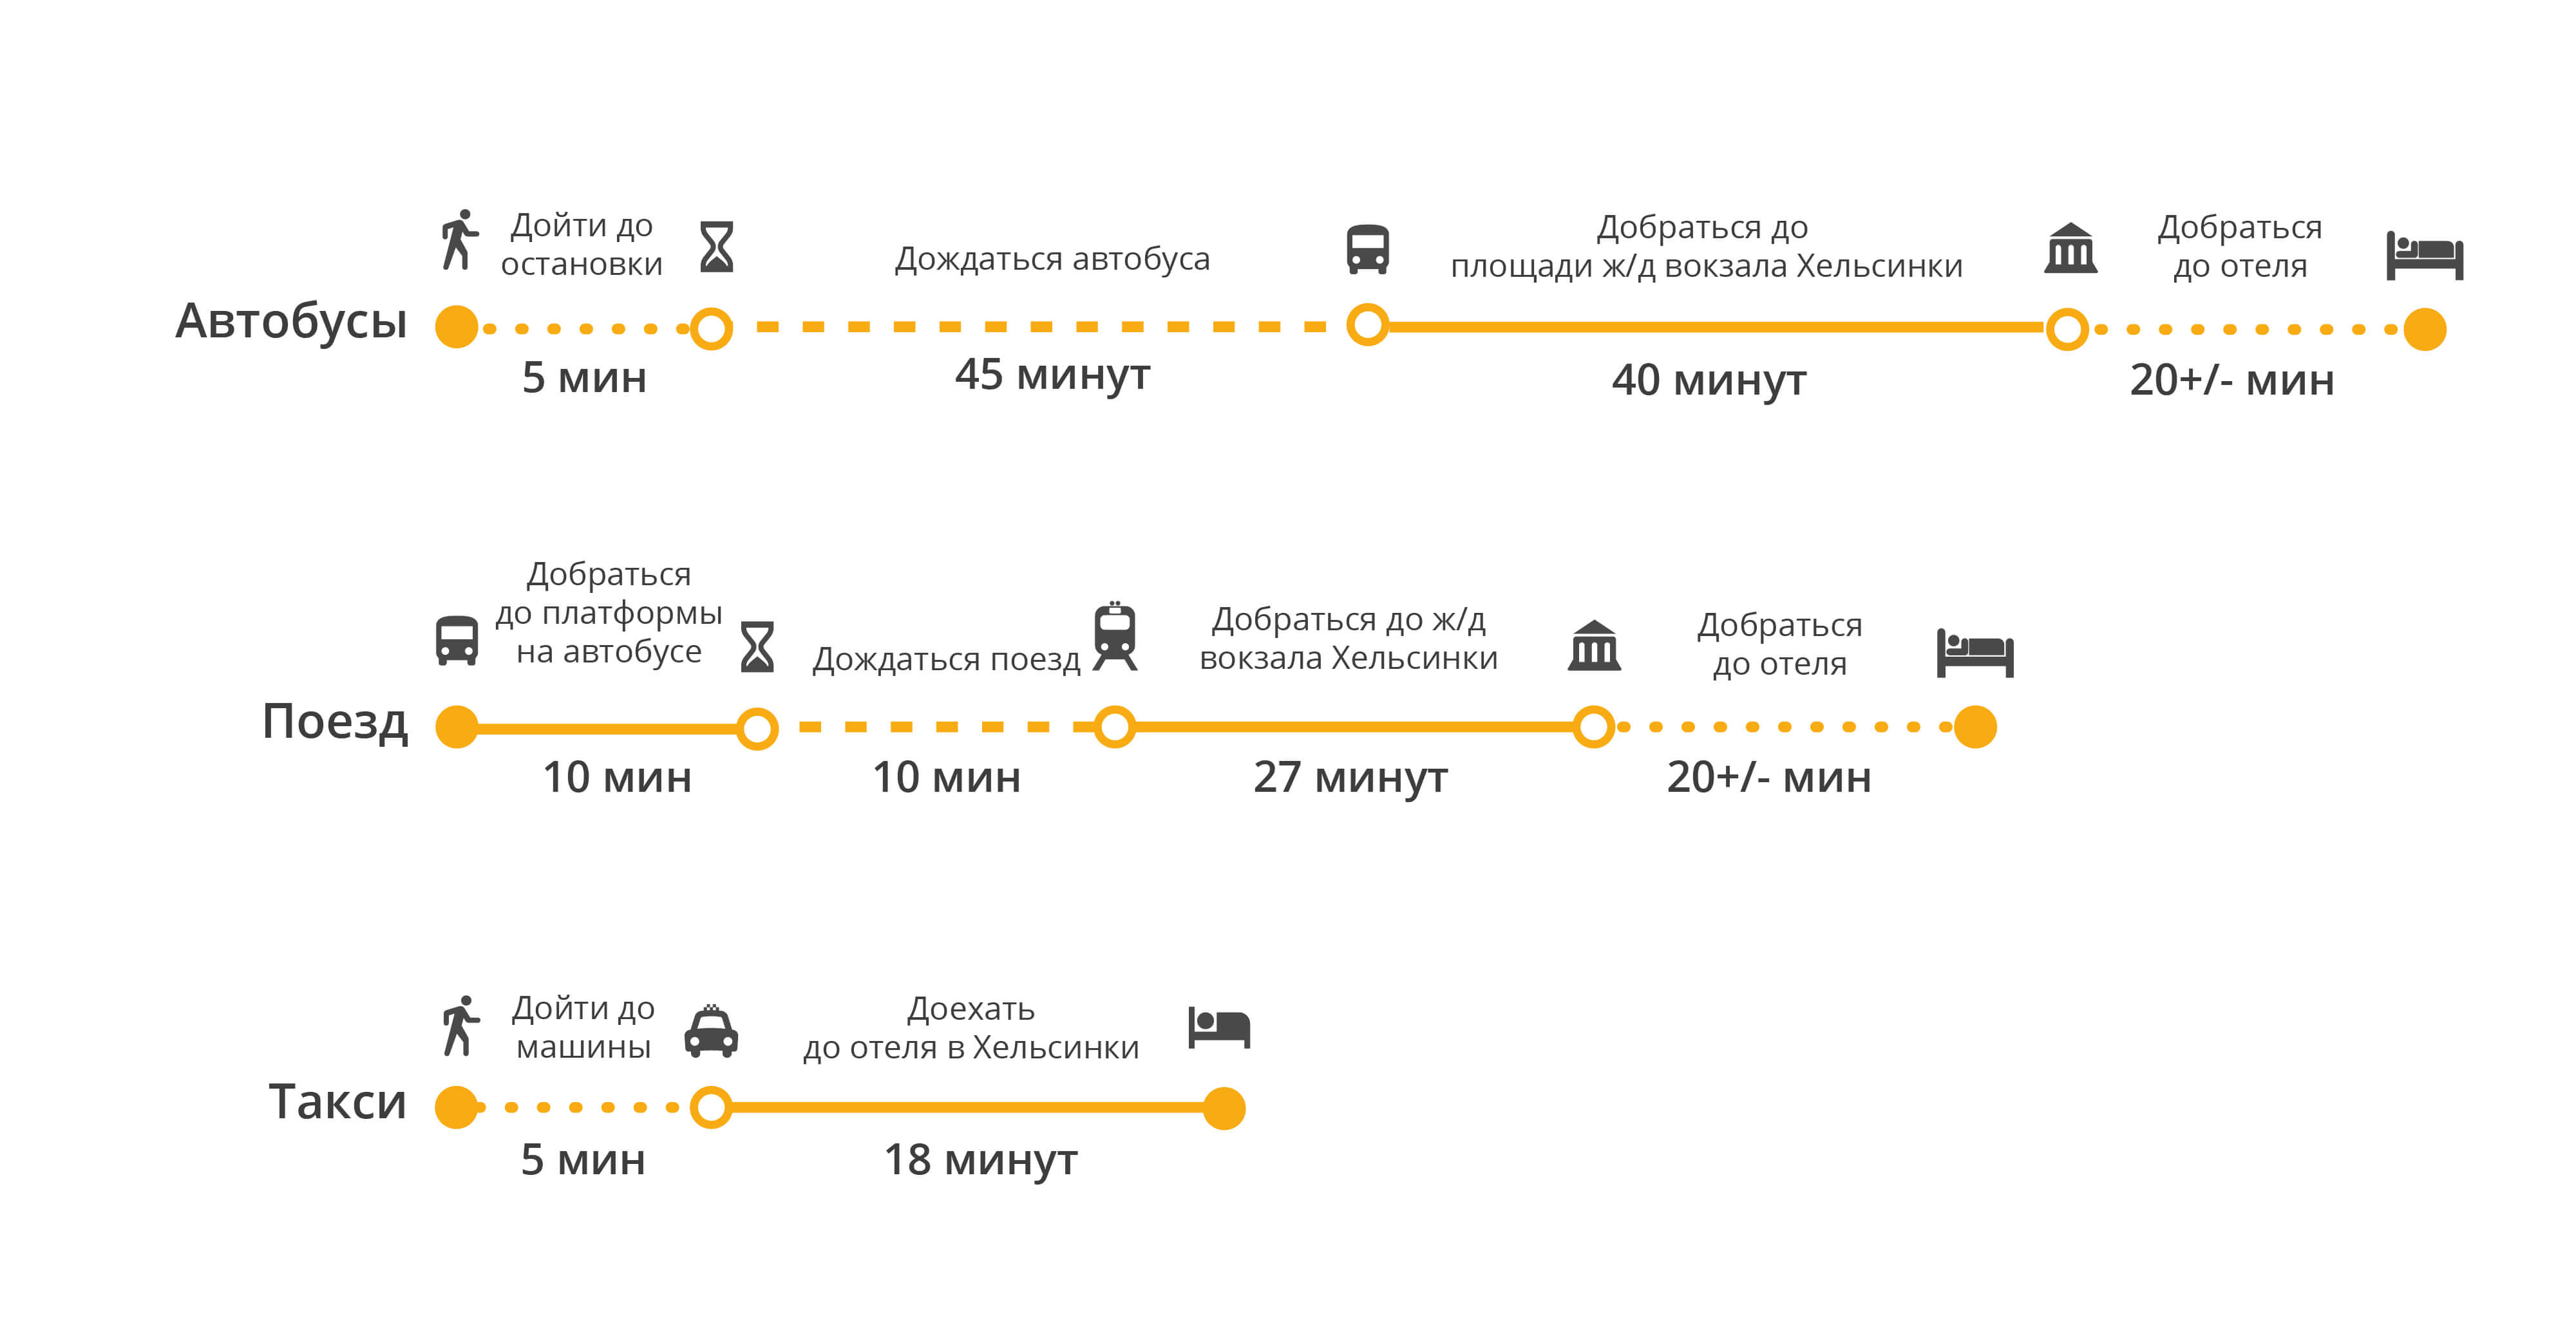 Как добраться до хельсинки самолетом, поездом, паромом, автомобилем, автобусом — билеты, расписания на туристер.ру